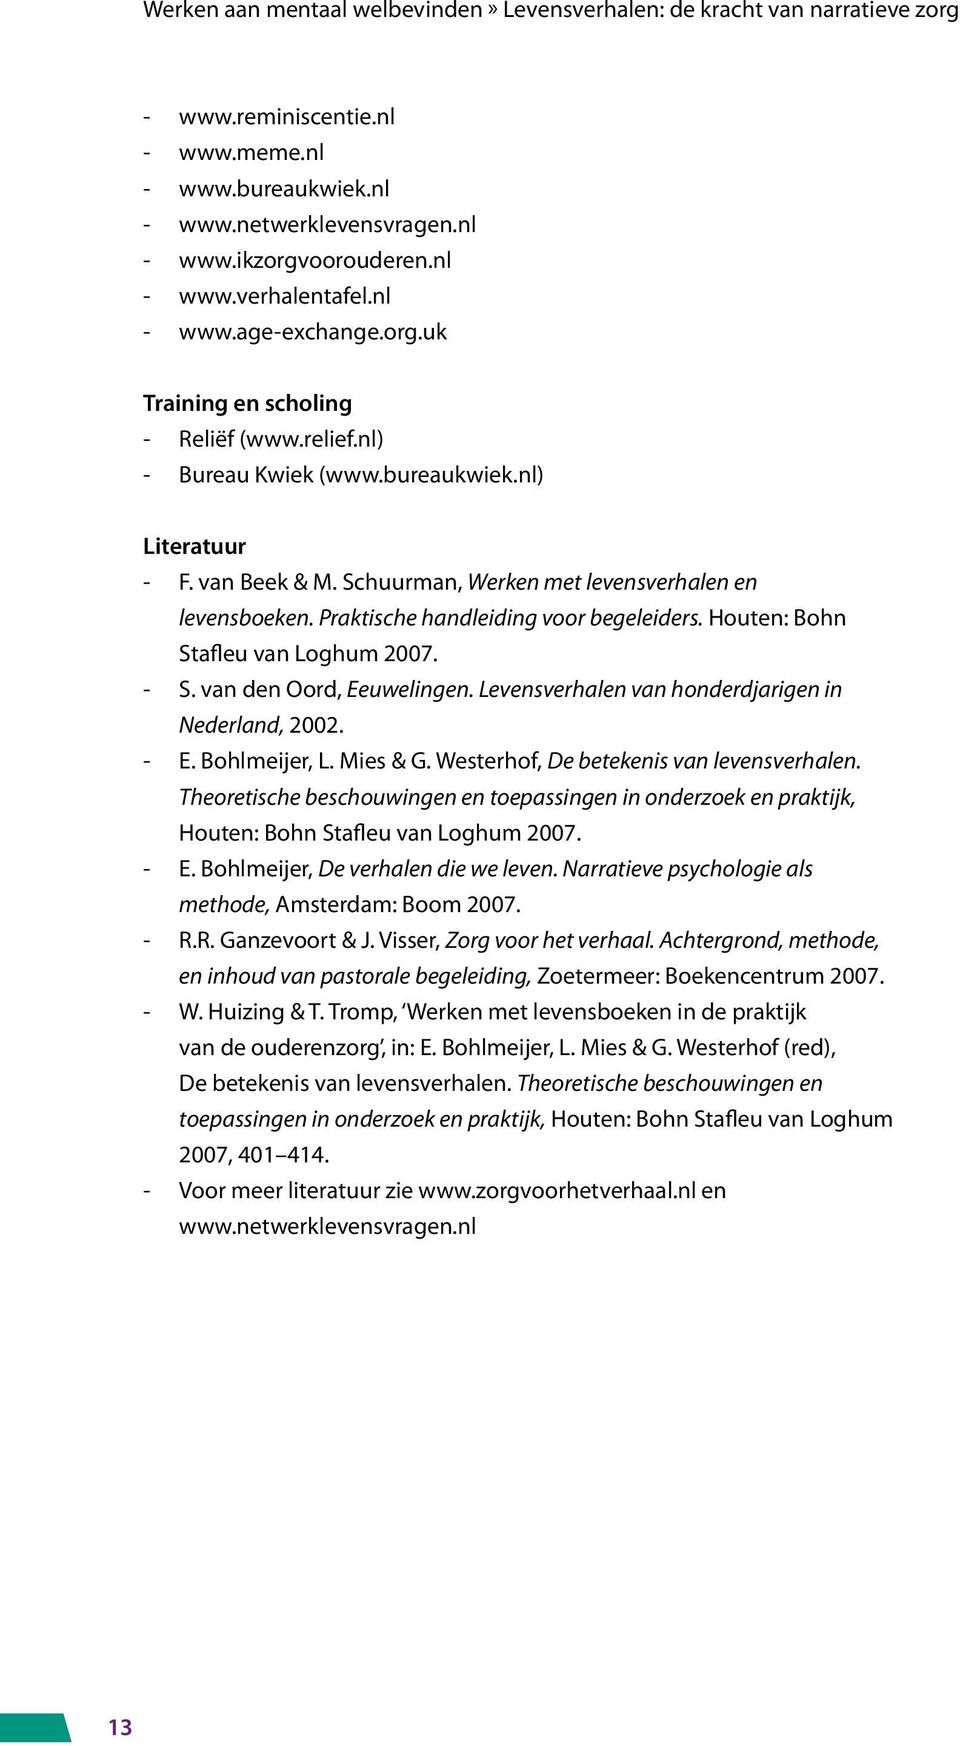 Houten: Bohn Stafleu van Loghum 2007. - S. van den Oord, Eeuwelingen. Levensverhalen van honderdjarigen in Nederland, 2002. - E. Bohlmeijer, L. Mies & G. Westerhof, De betekenis van levensverhalen.